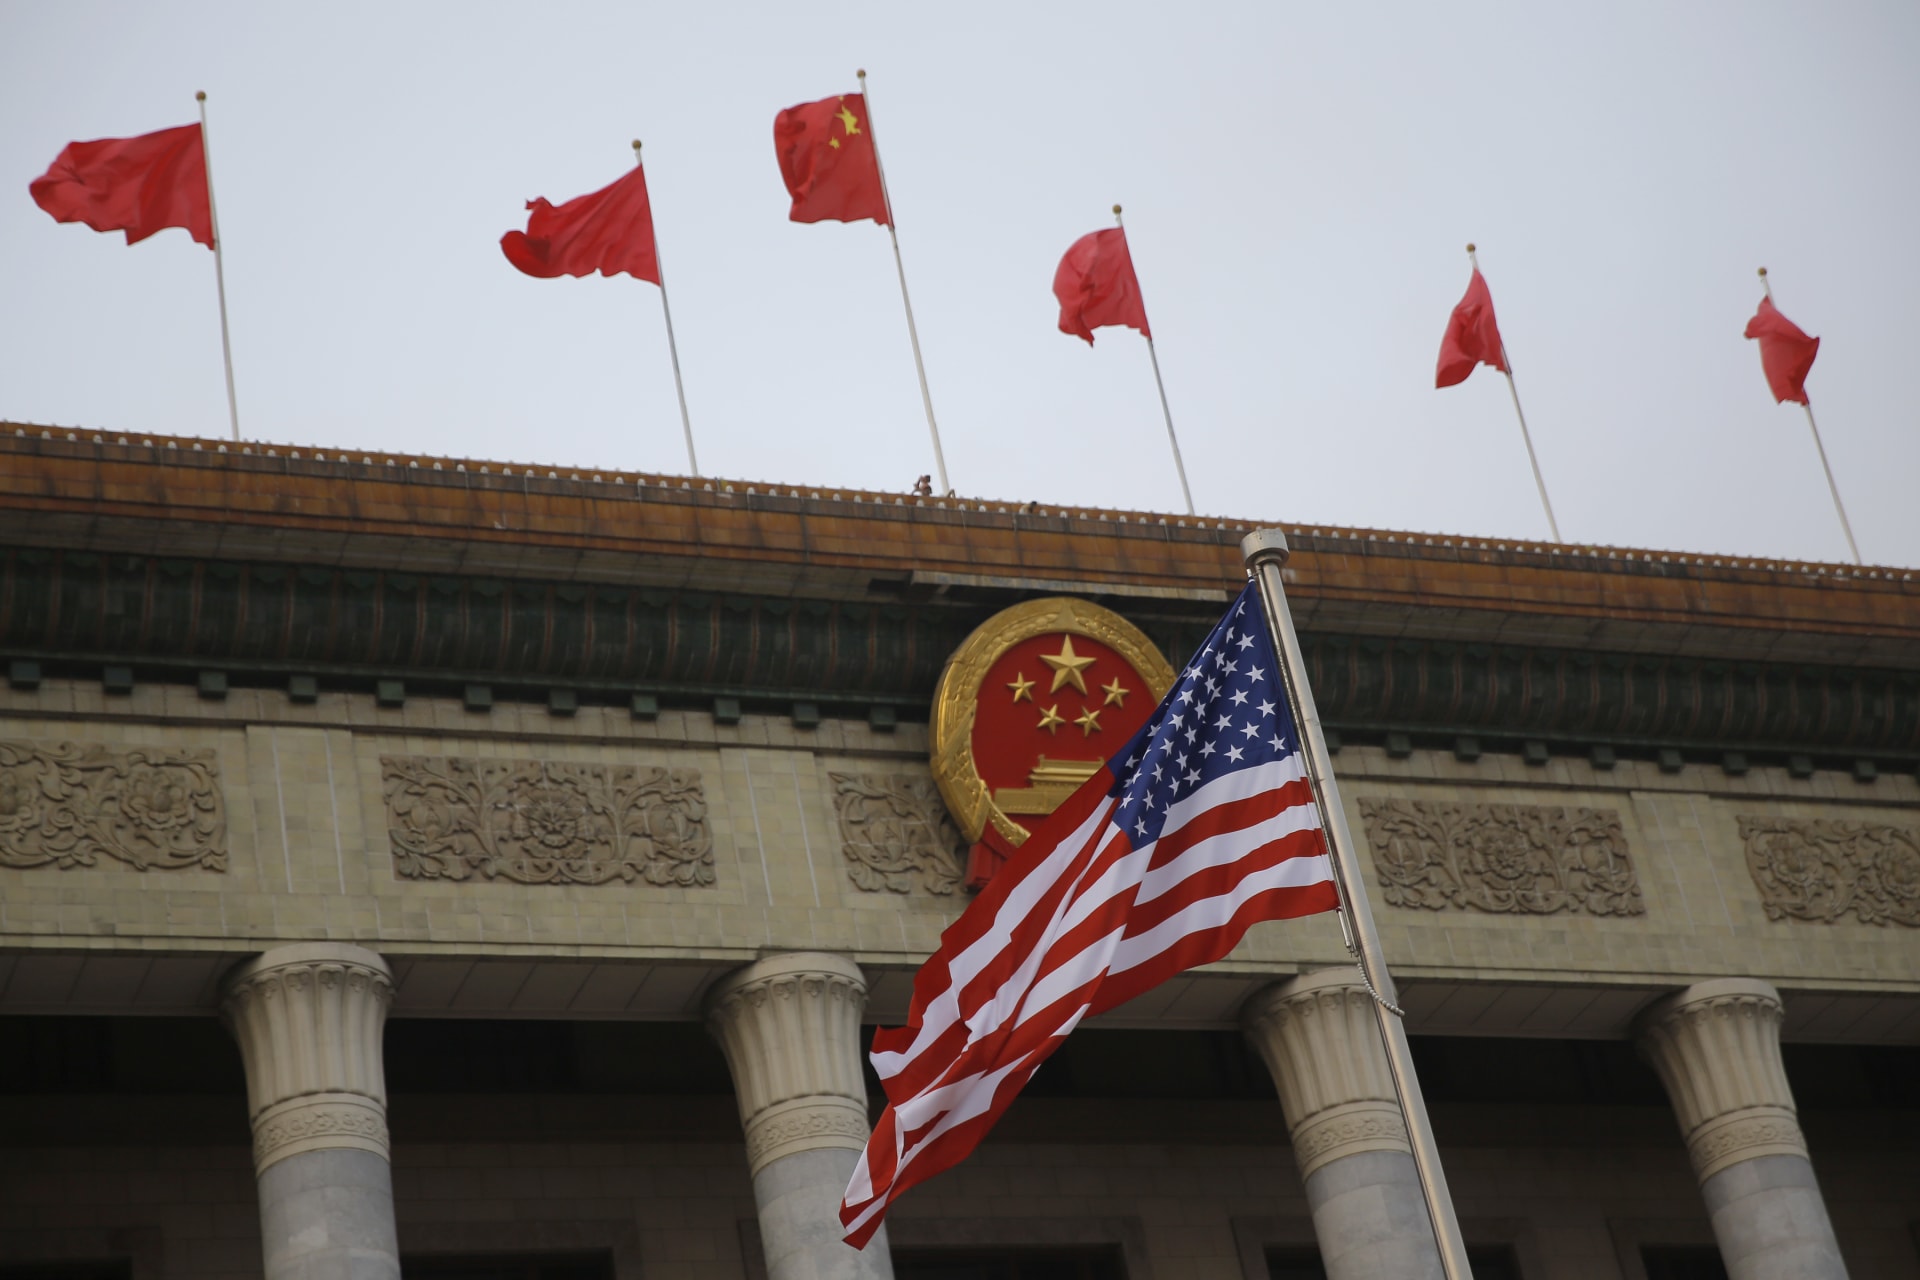 الحكومة الصينية لـCNN: تحذير أمريكا بشأن نفوذنا "المتزايد" استفزازي